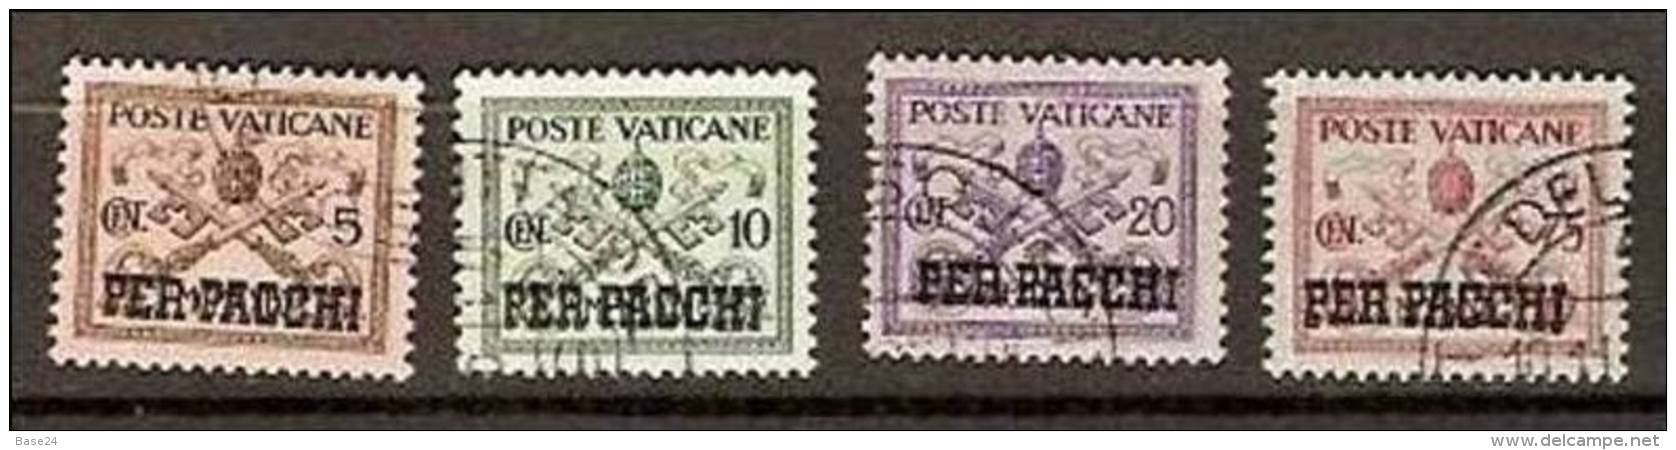 1931 Vaticano Vatican PACCHI POSTALI  5c+10c+20c+75c Usati USED Parcel Post - Colis Postaux